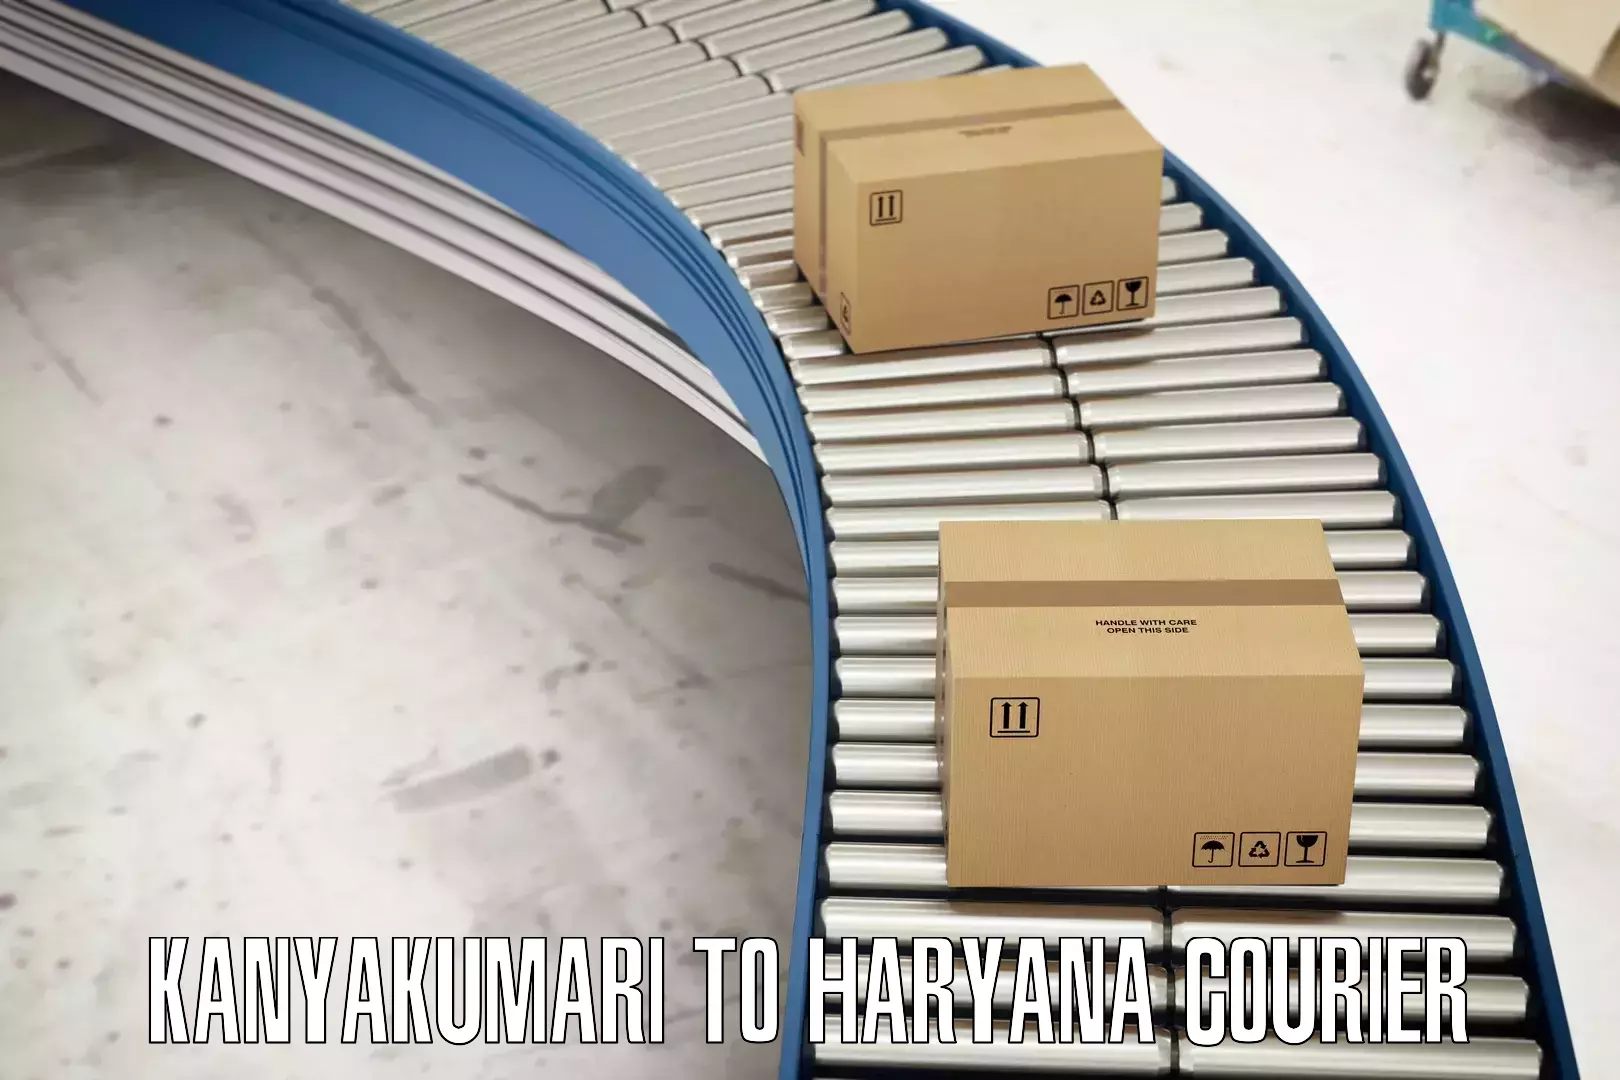 Smart logistics solutions Kanyakumari to Karnal